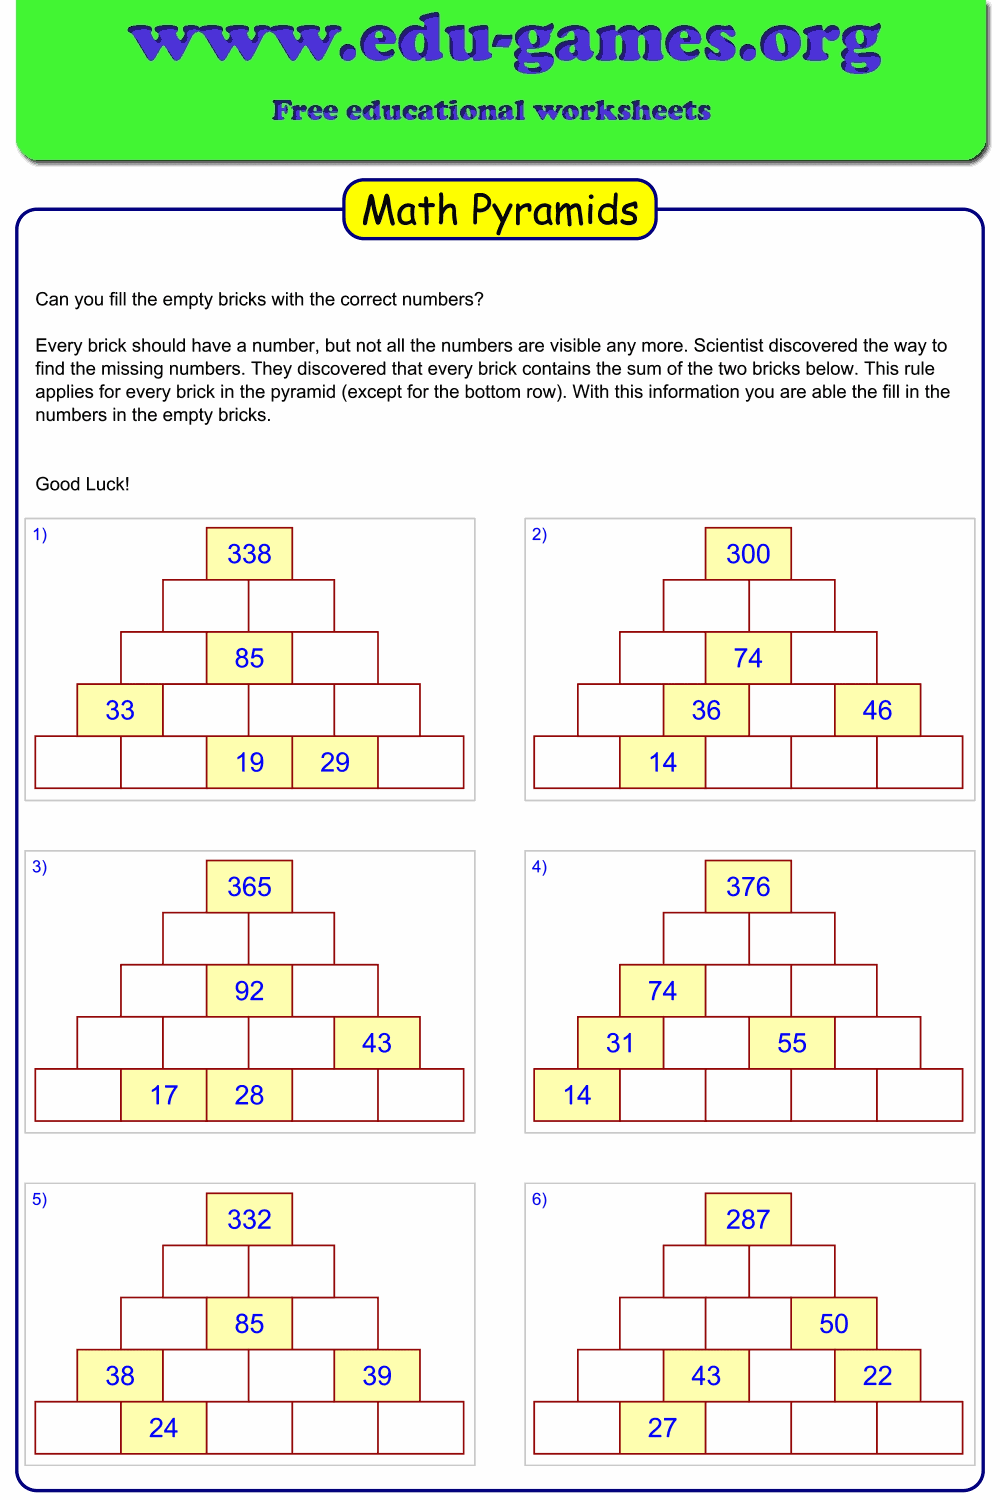 math-pyramid-game-worksheets-free-printable-math-puzzles